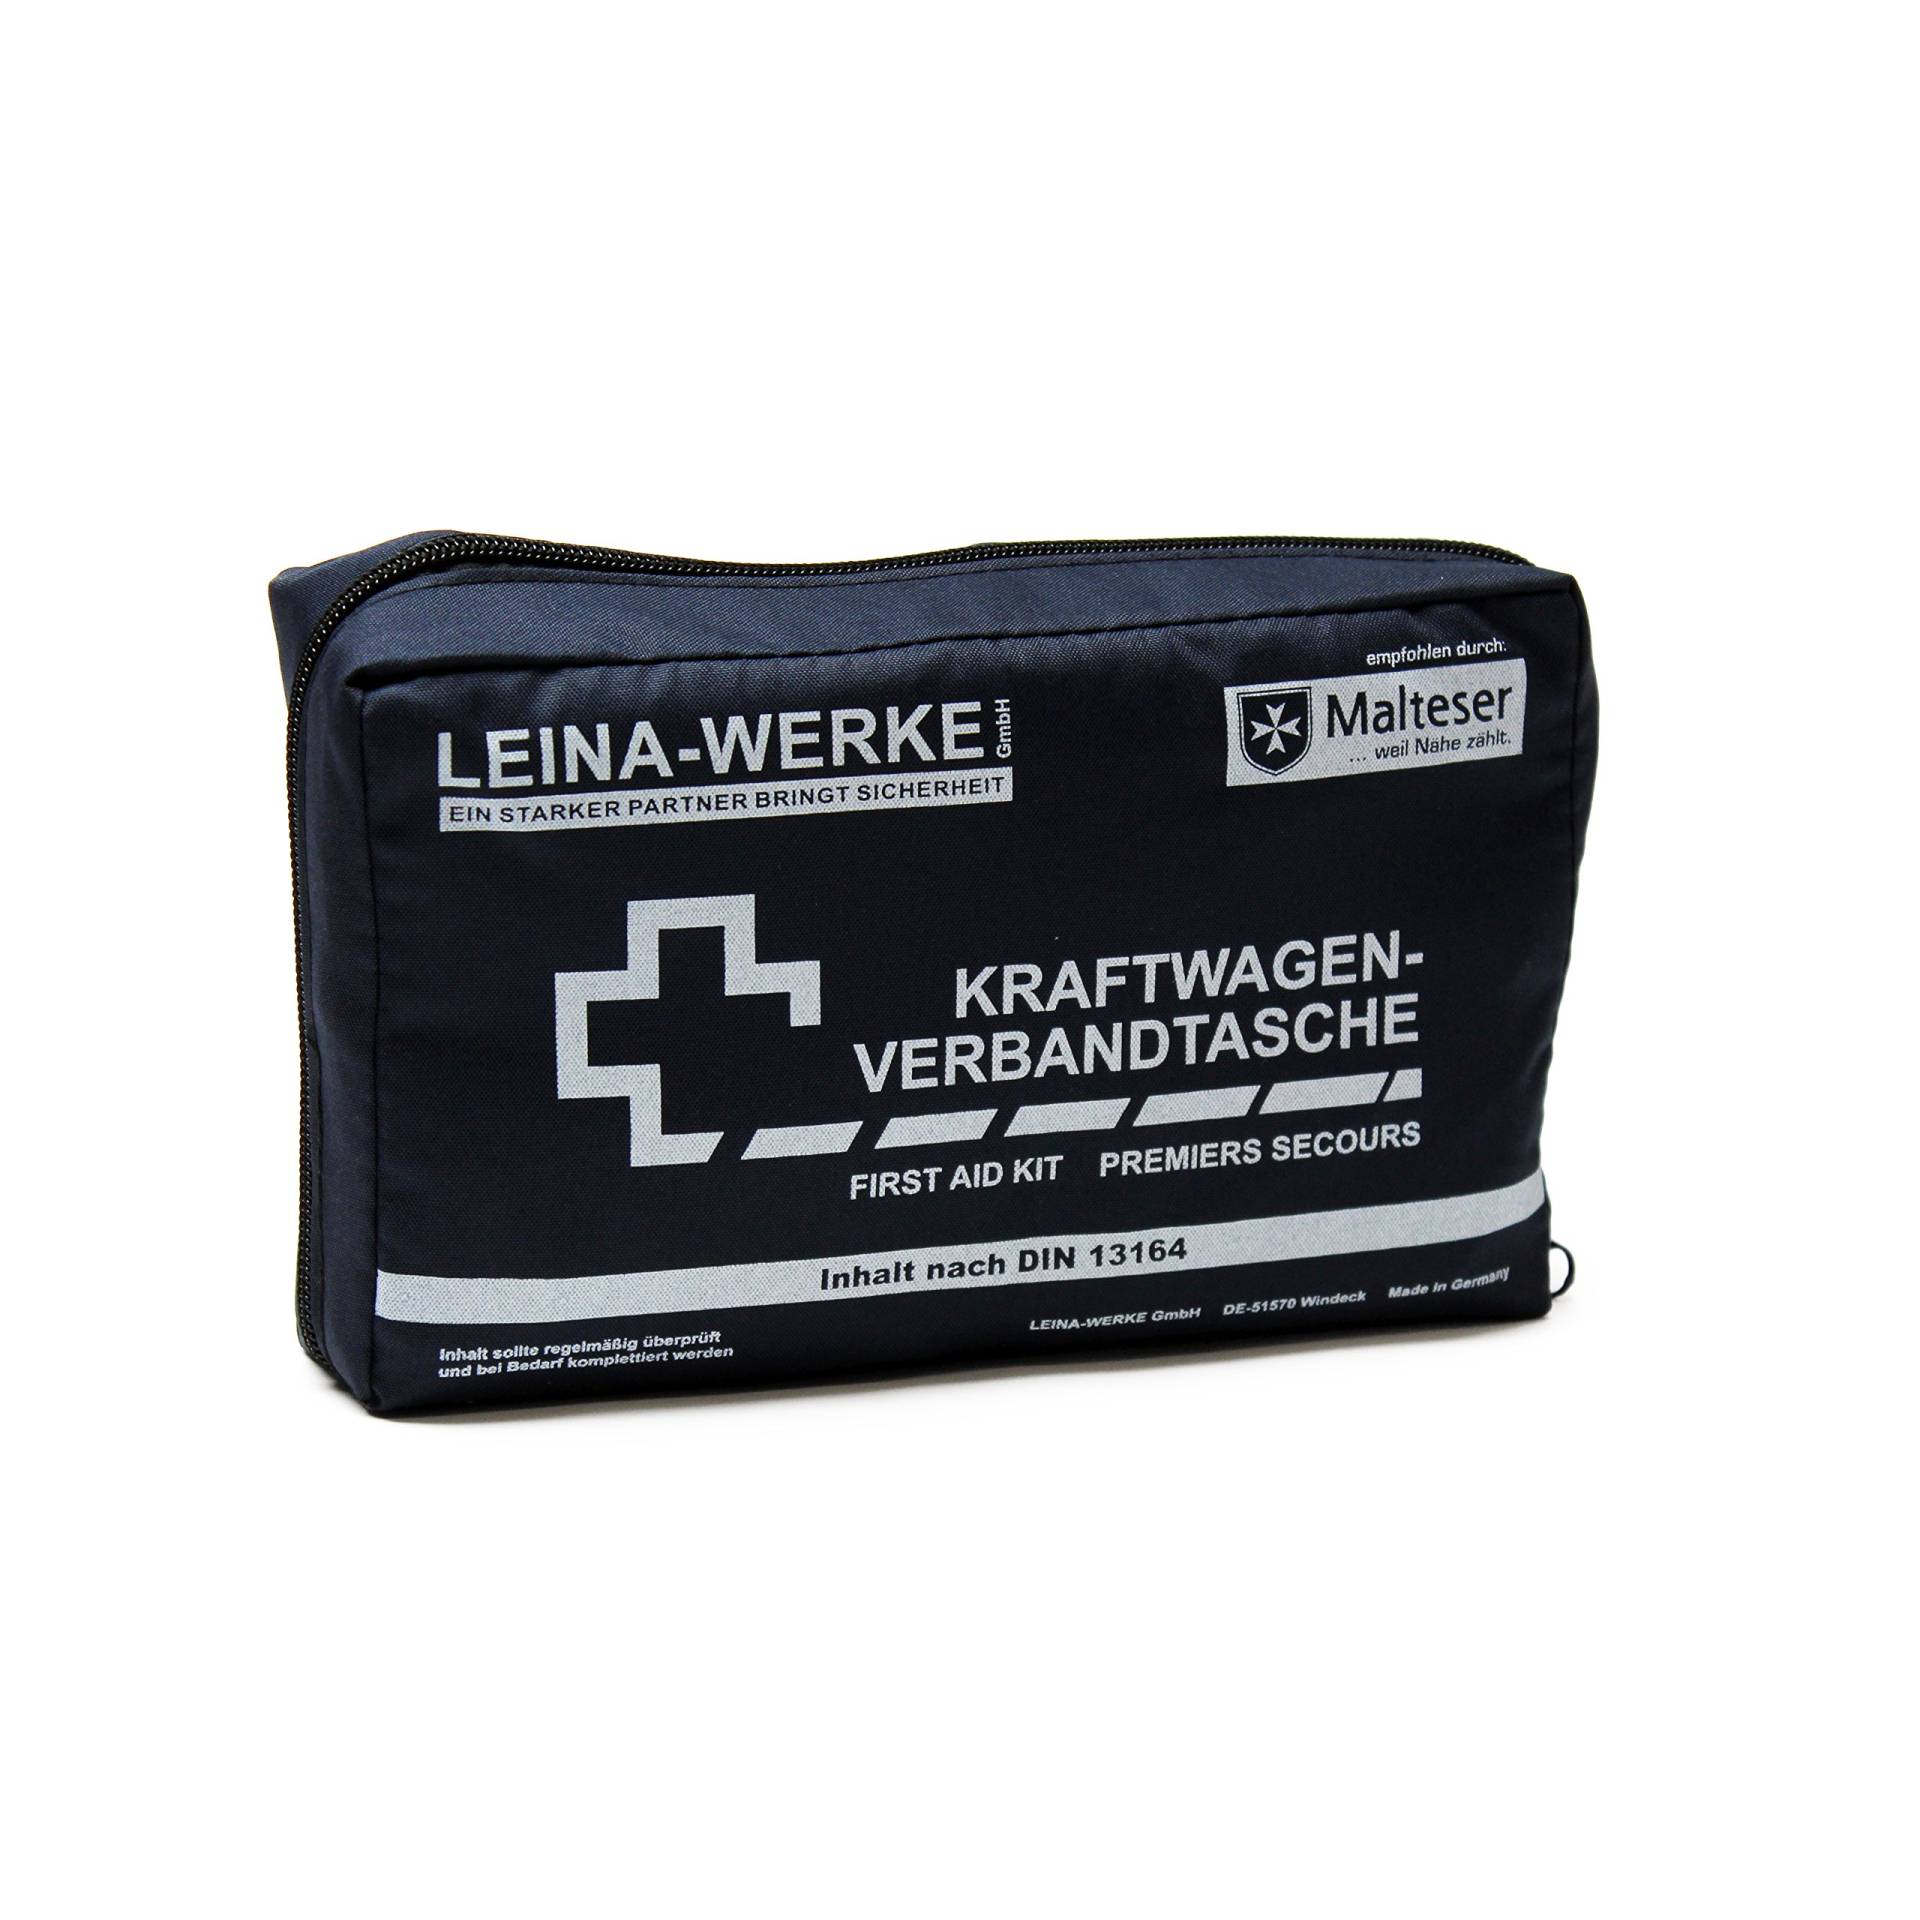 LEINA-WERKE 11001 KFZ-Verbandtaschen Compact - blau von Leina-Werke